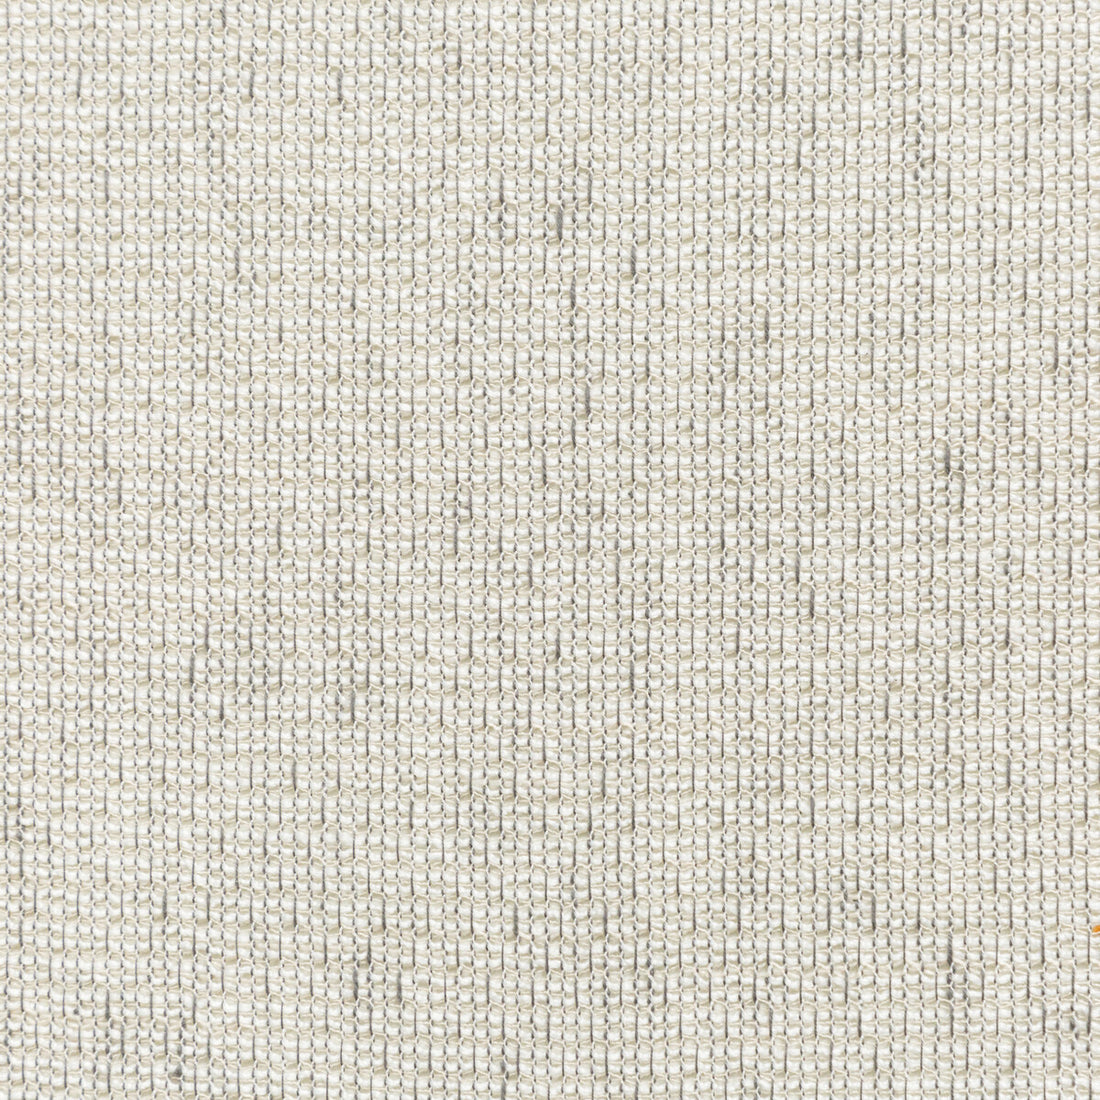 Kravet Basics fabric in 4676-11 color - pattern 4676.11.0 - by Kravet Basics